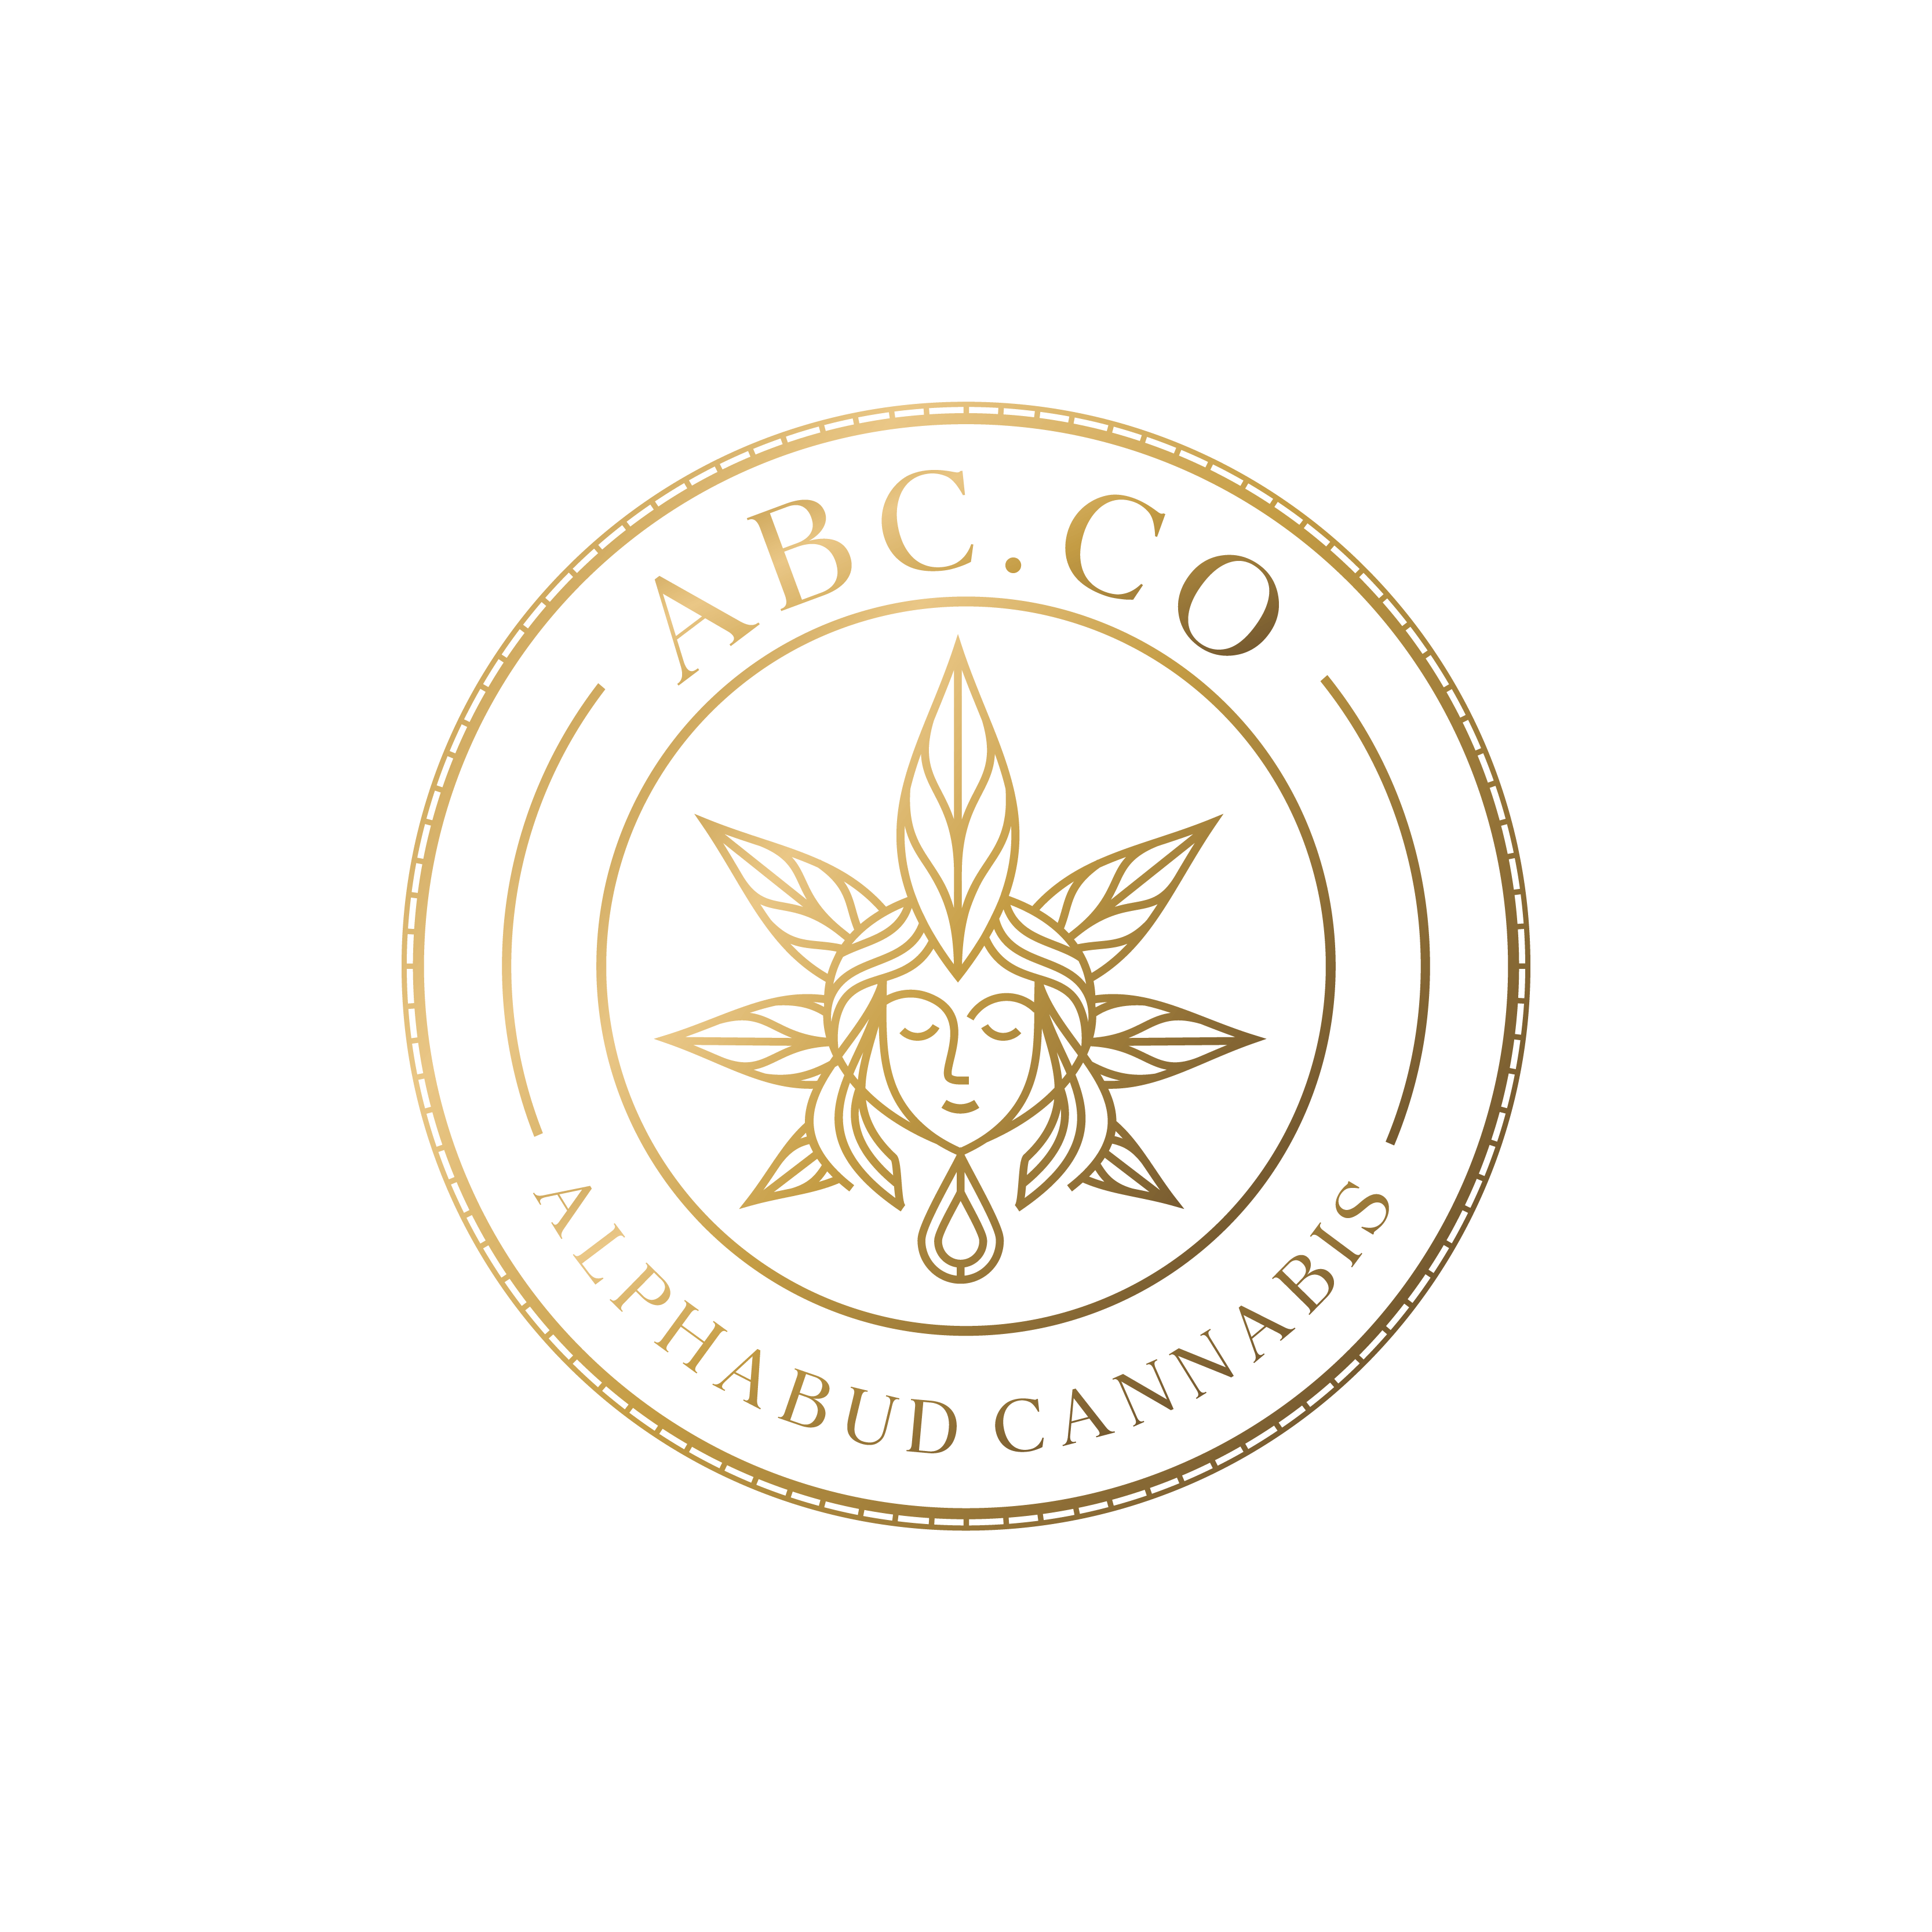 AlphaBud Cannabis (ABC Co) logo